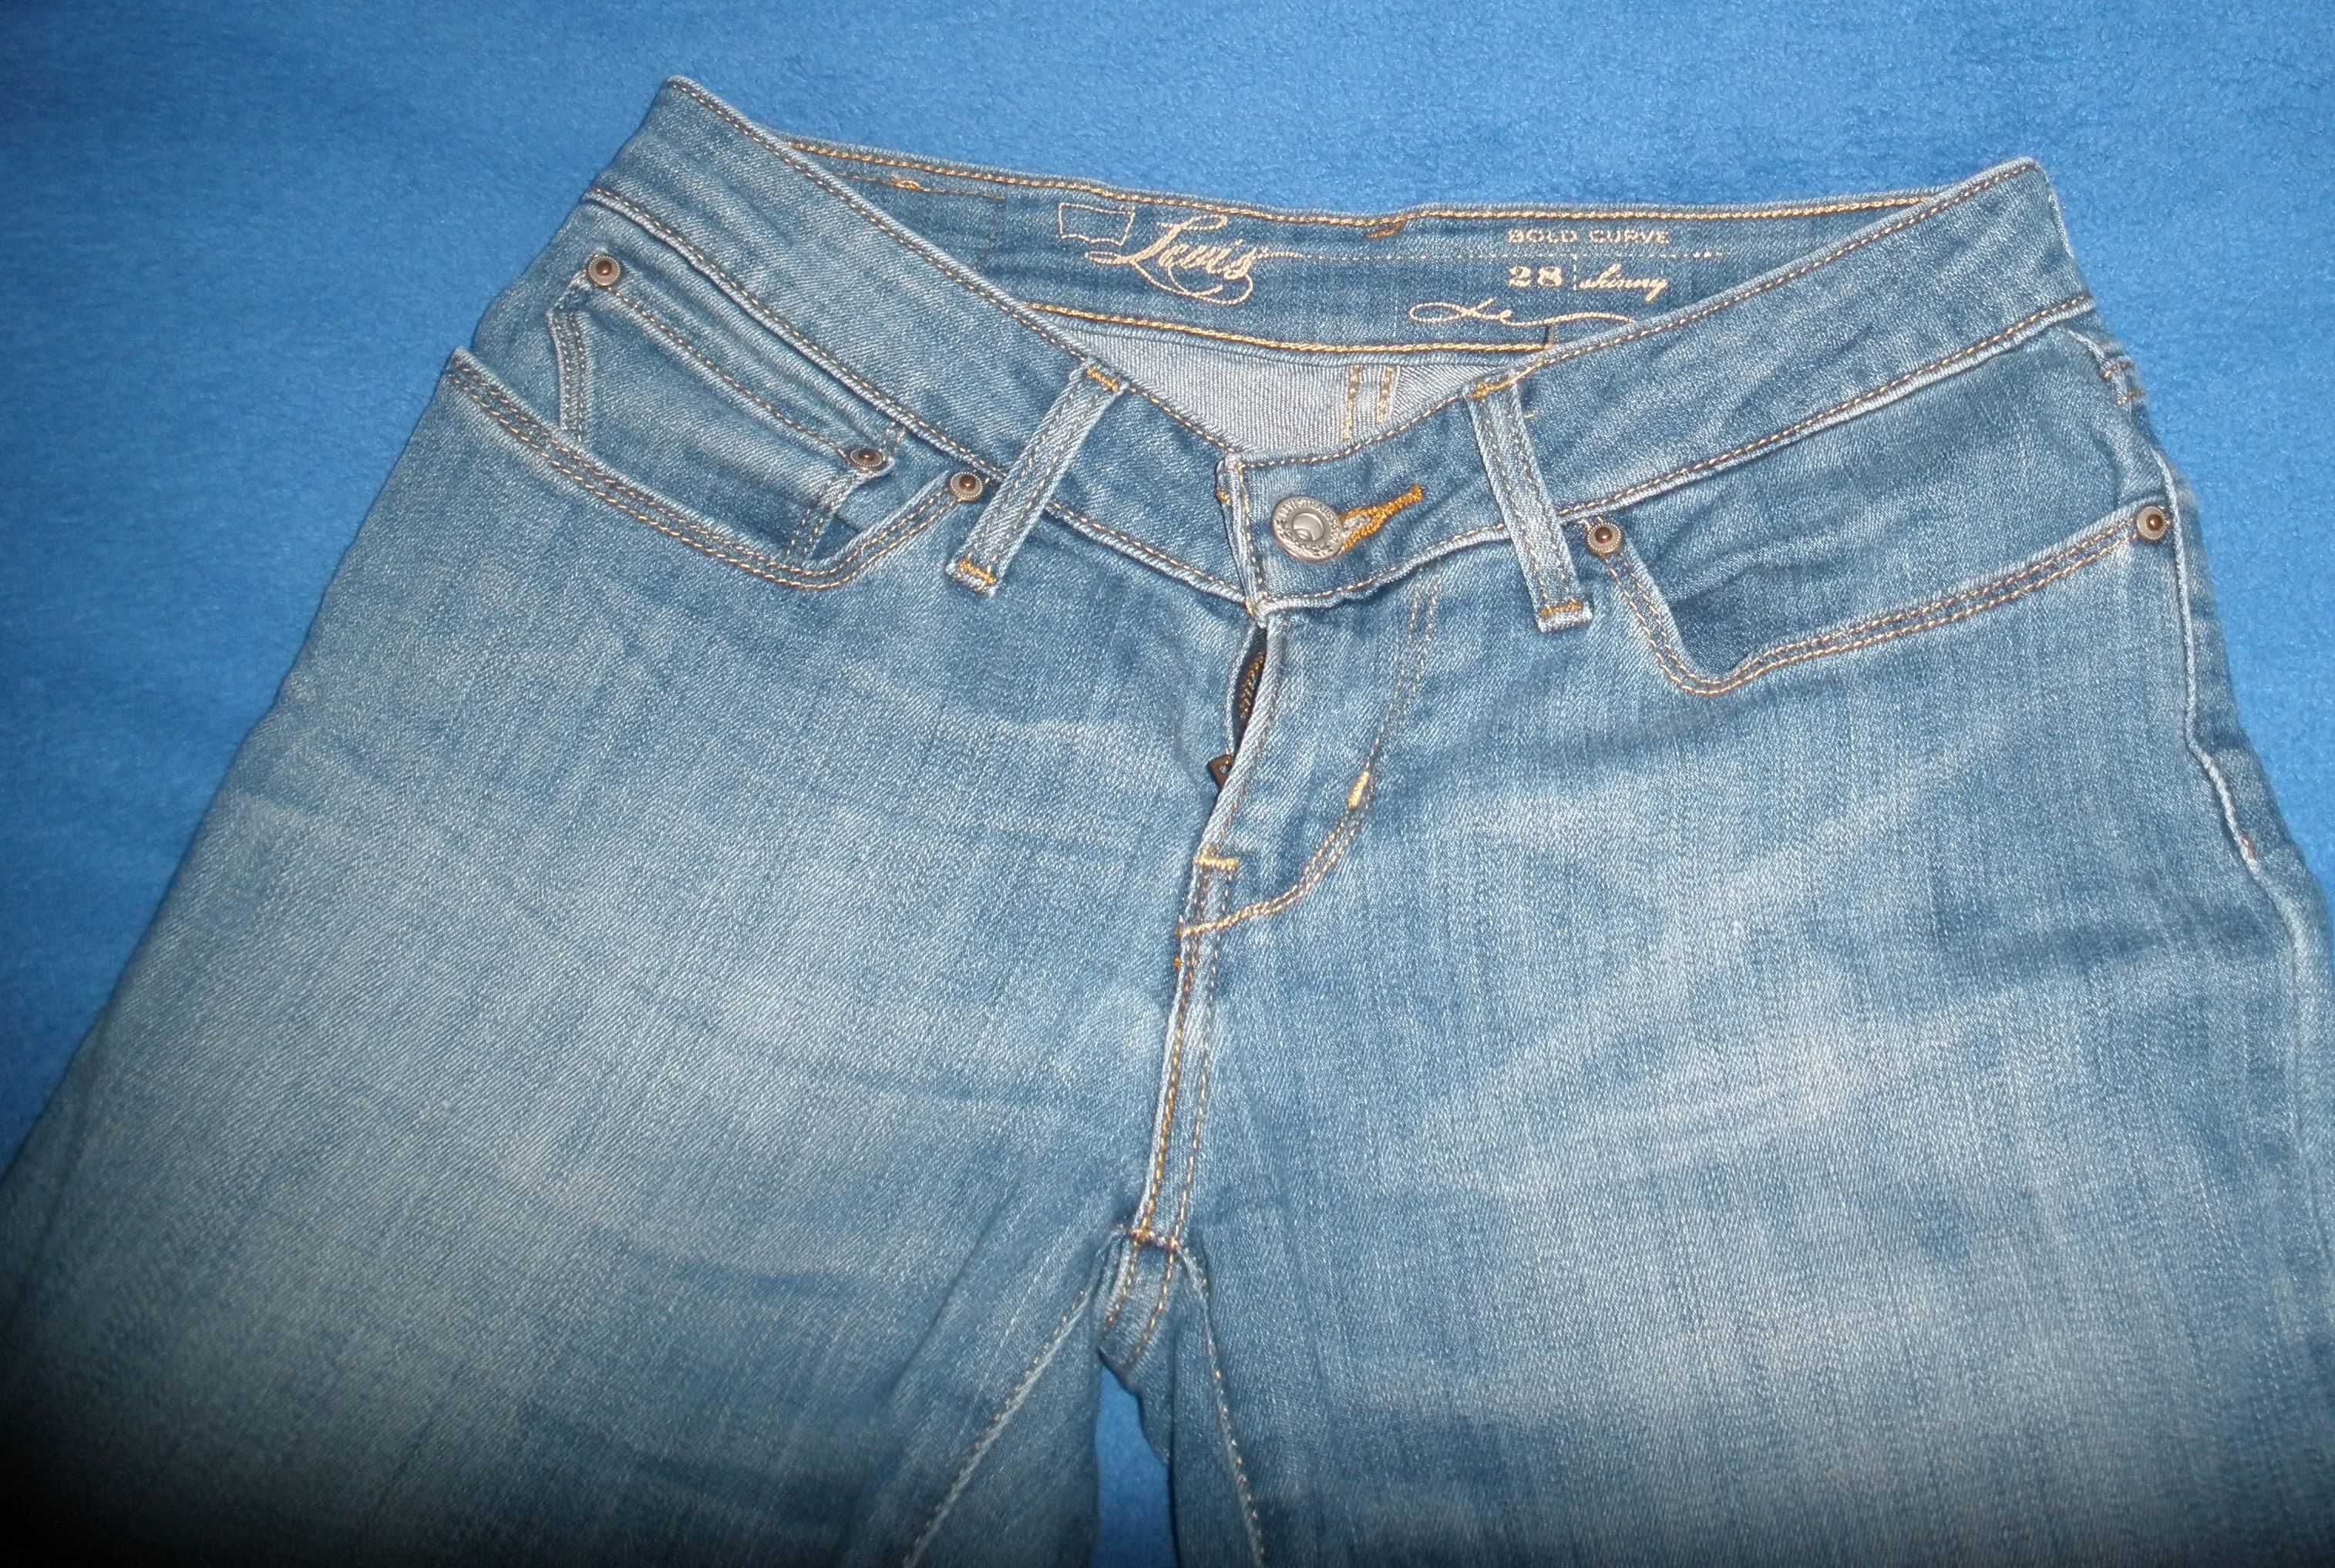 Spodnie jeans damskie rurki Levi's + niespodzianka gratis